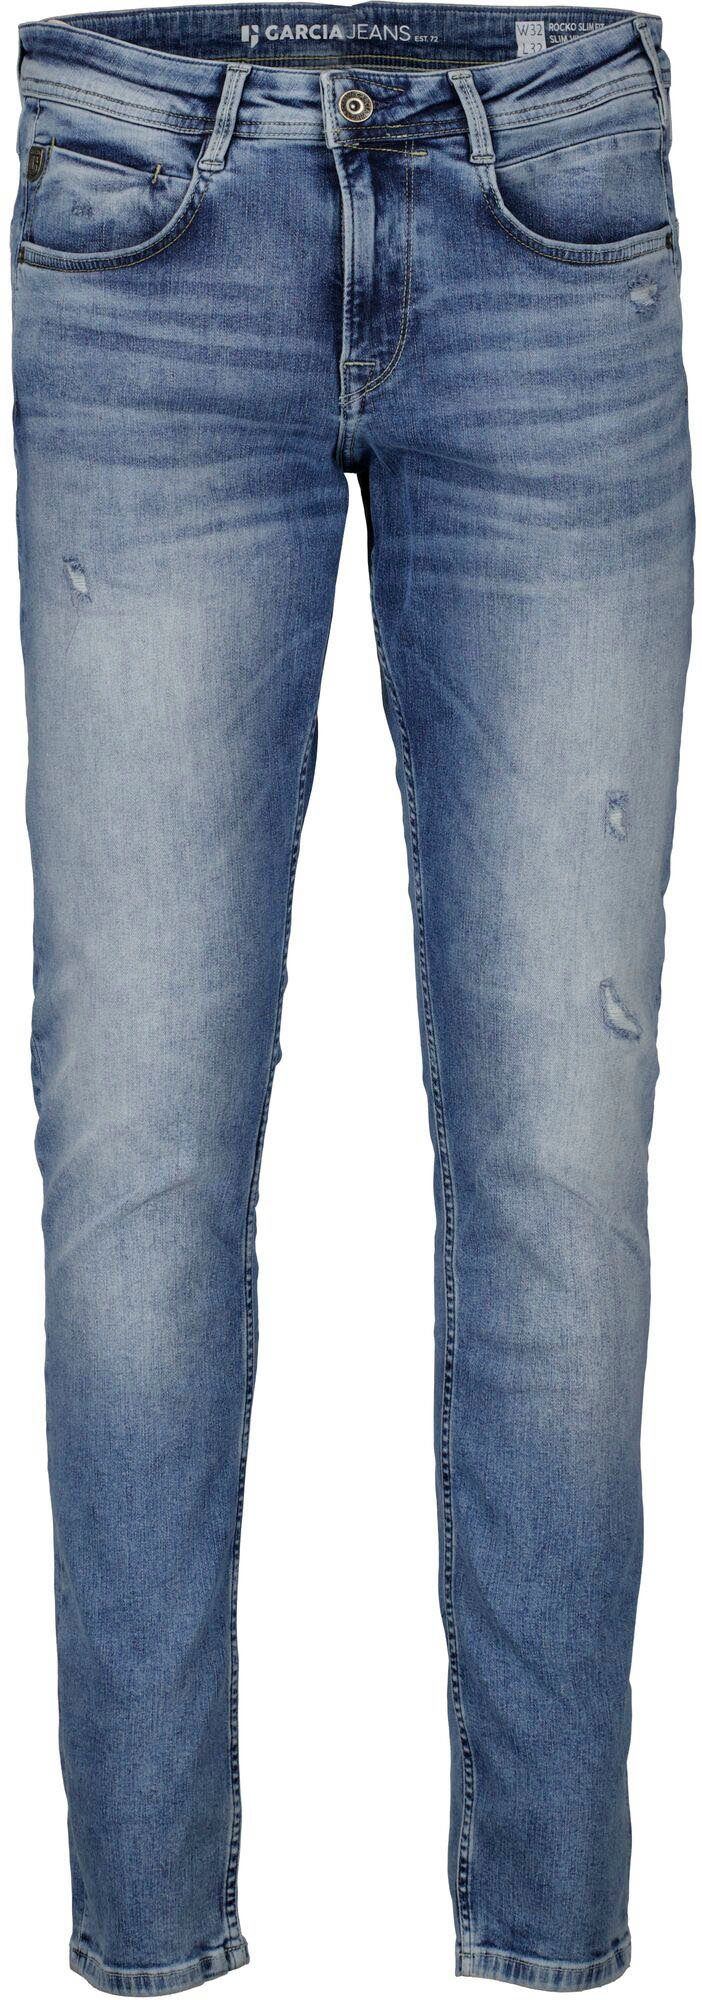 Garcia 5-Pocket-Jeans in Rocko used verschiedenen Waschungen vintage